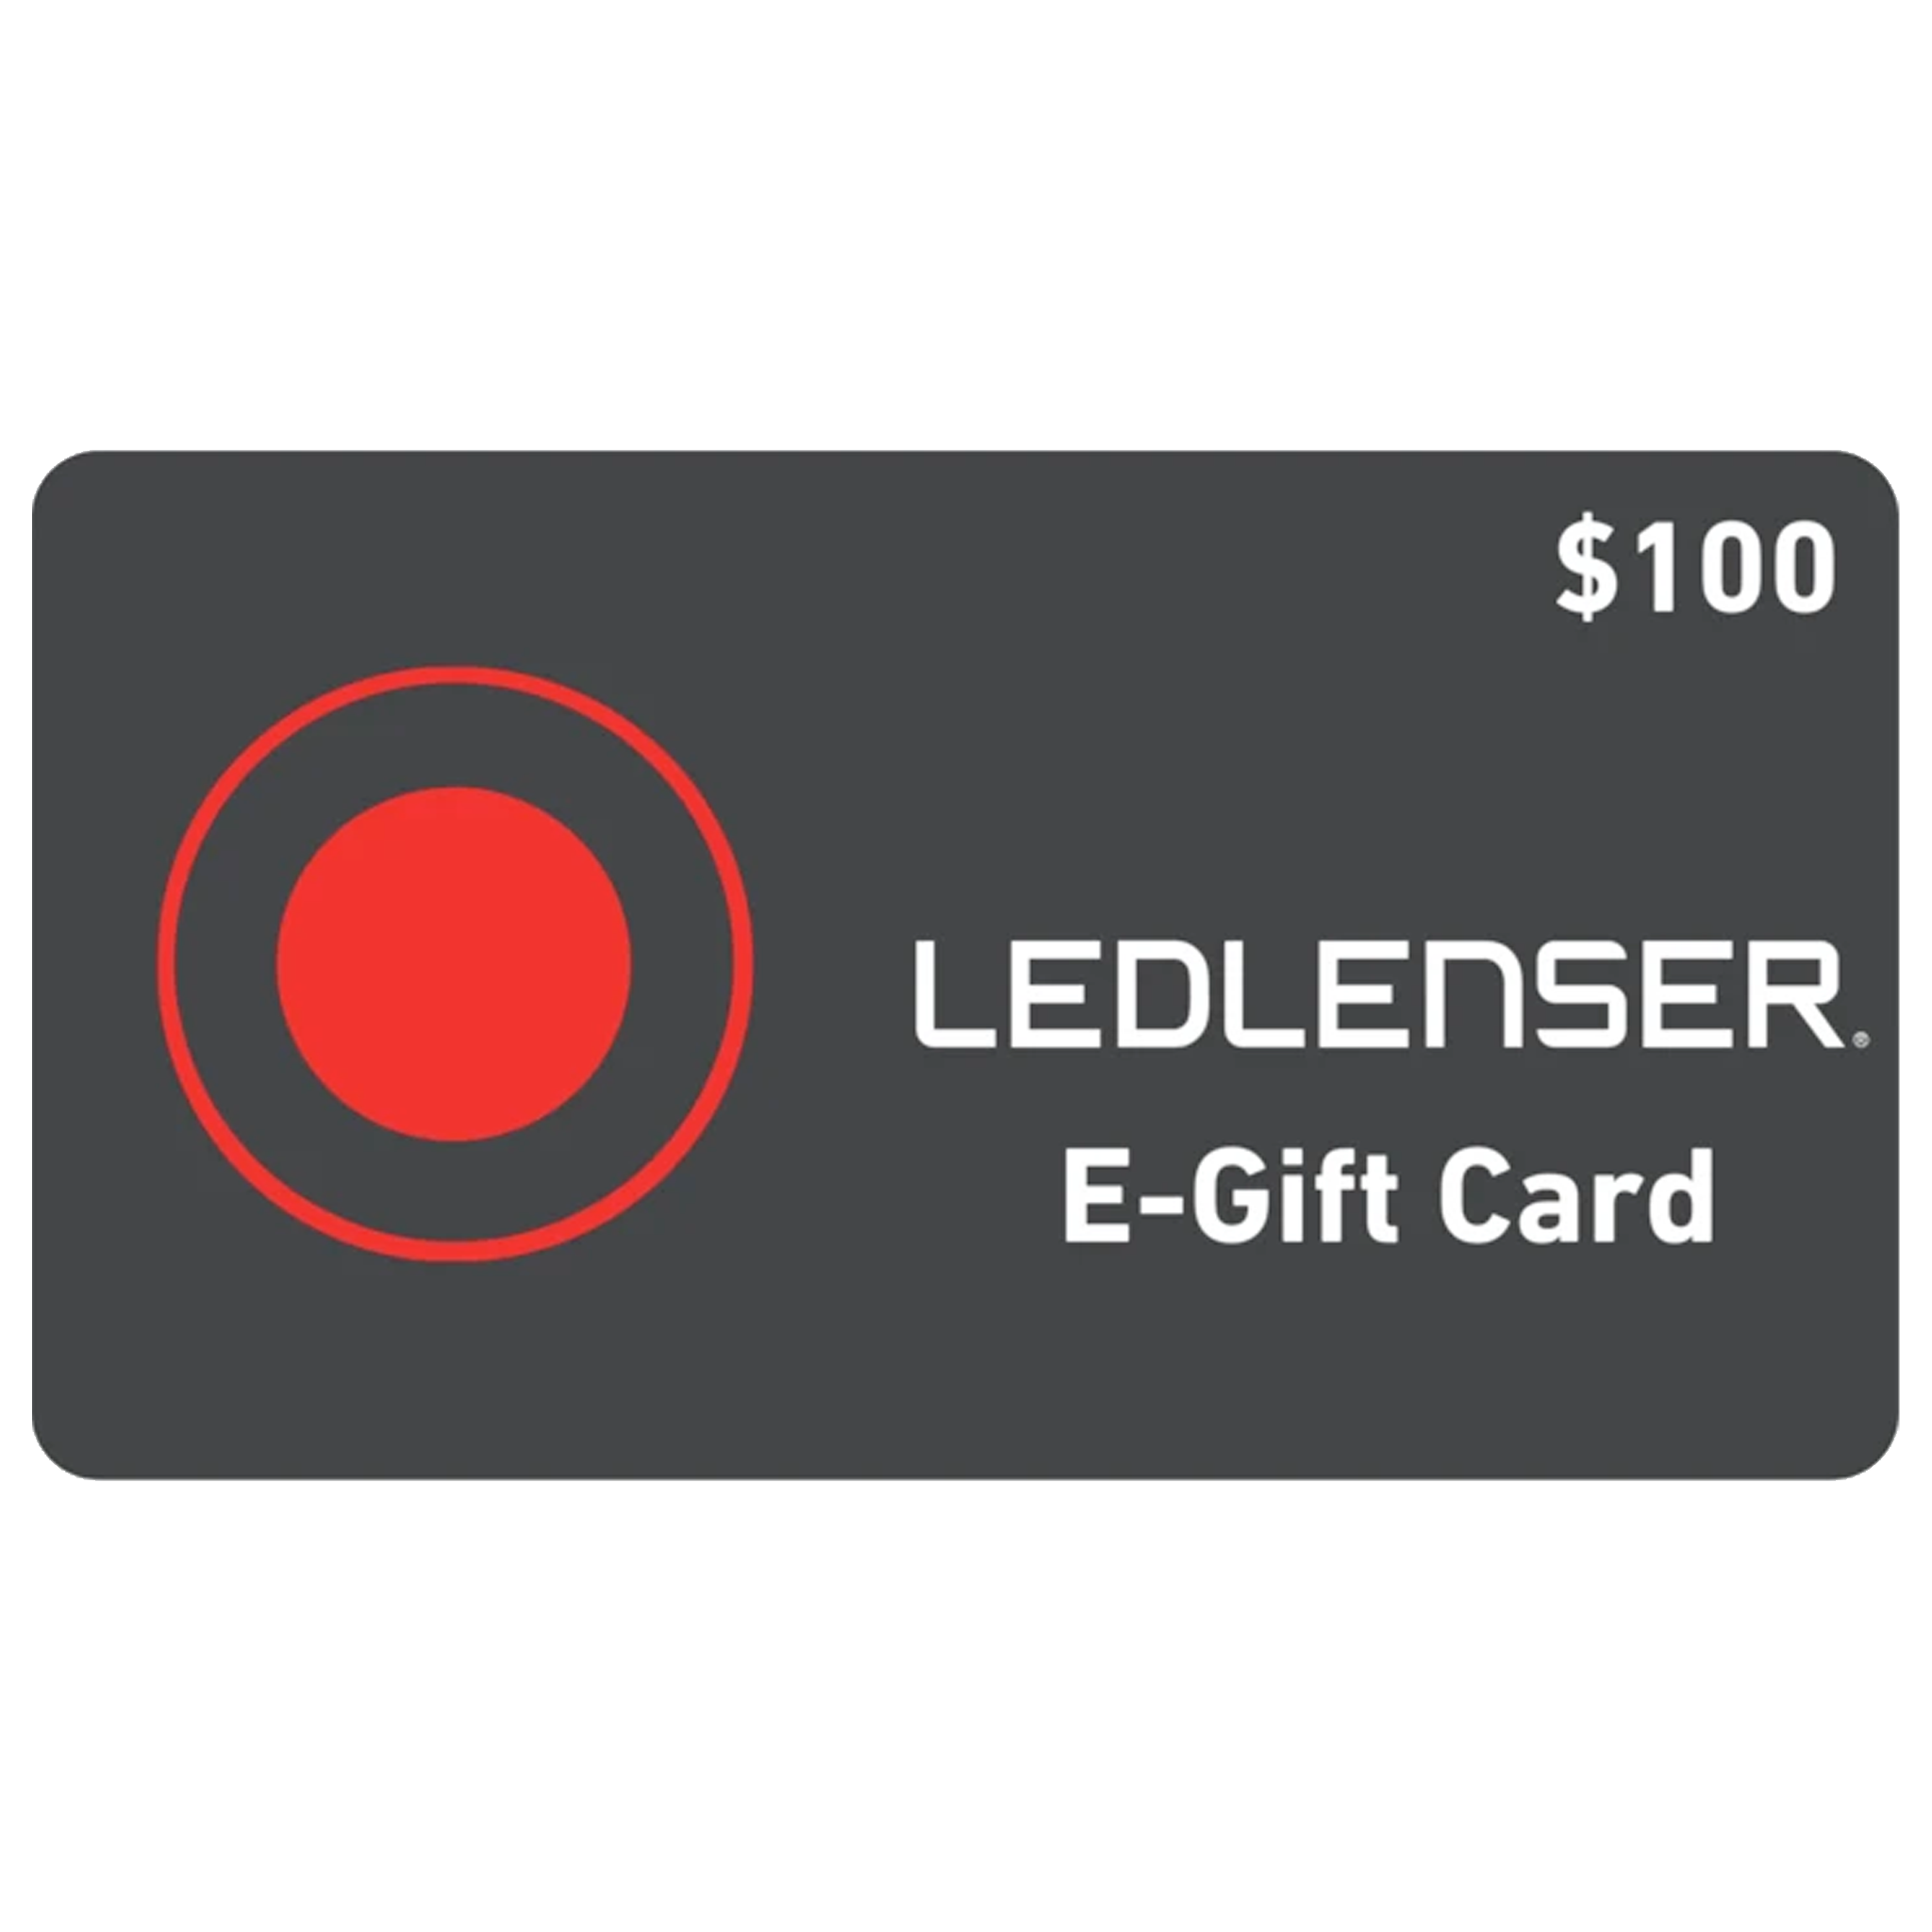 Ledlenser Gift Card - $100